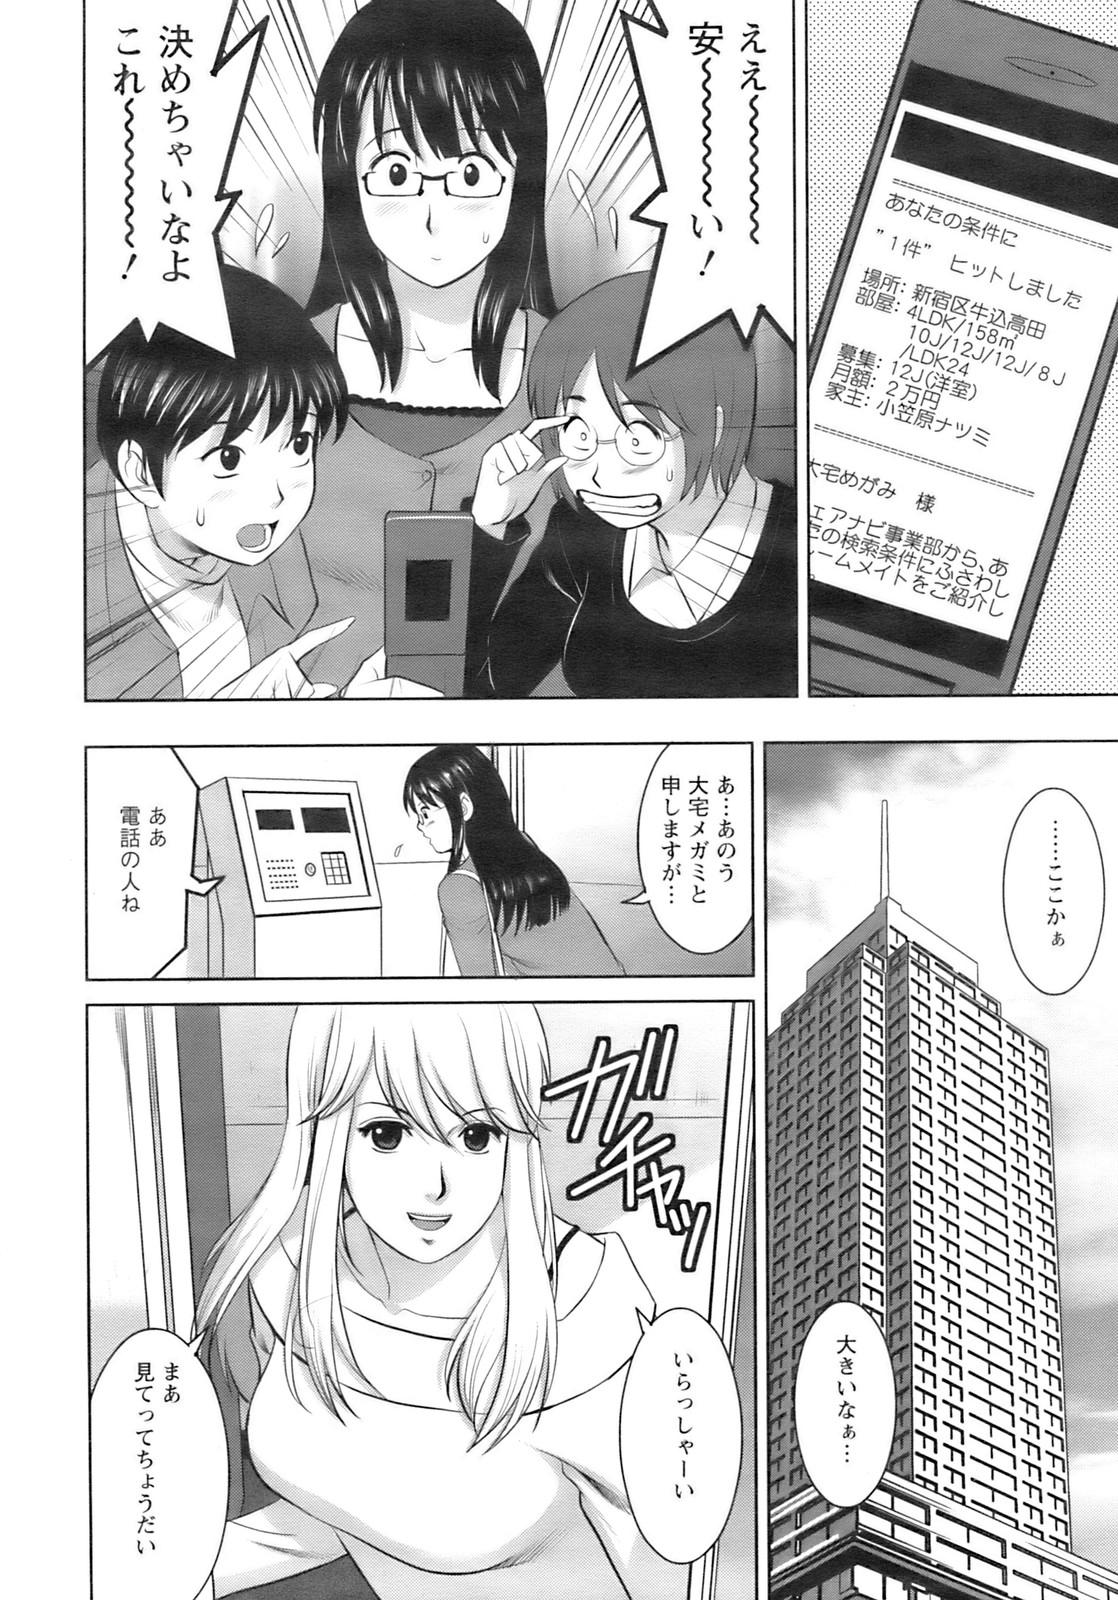 Negra Otaku no Megami san India - Page 6